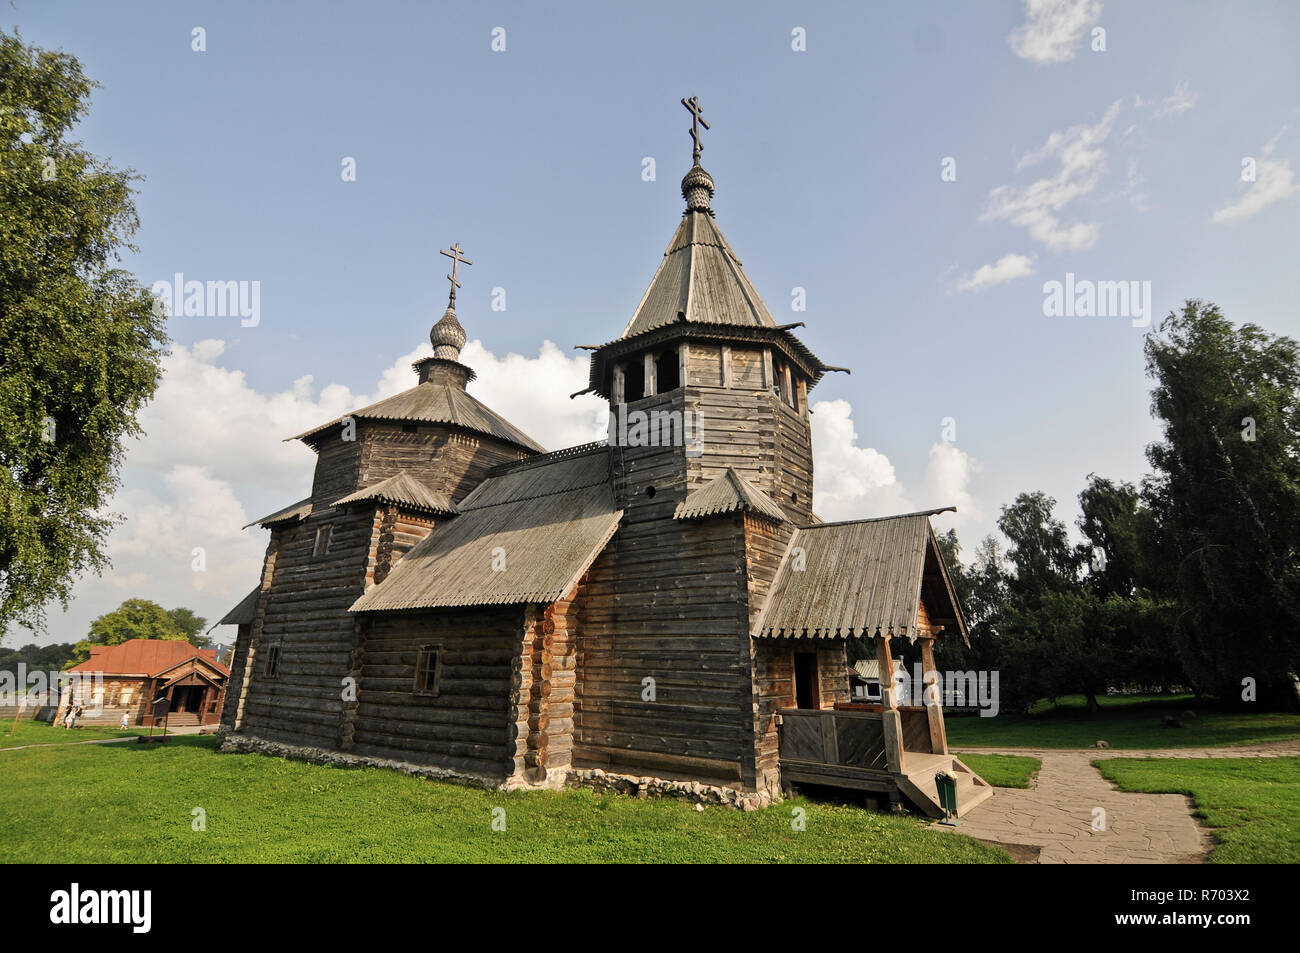 Musée de l'architecture en bois et de la vie paysanne - l'ancienne église en bois. Suzdal, Russie Banque D'Images